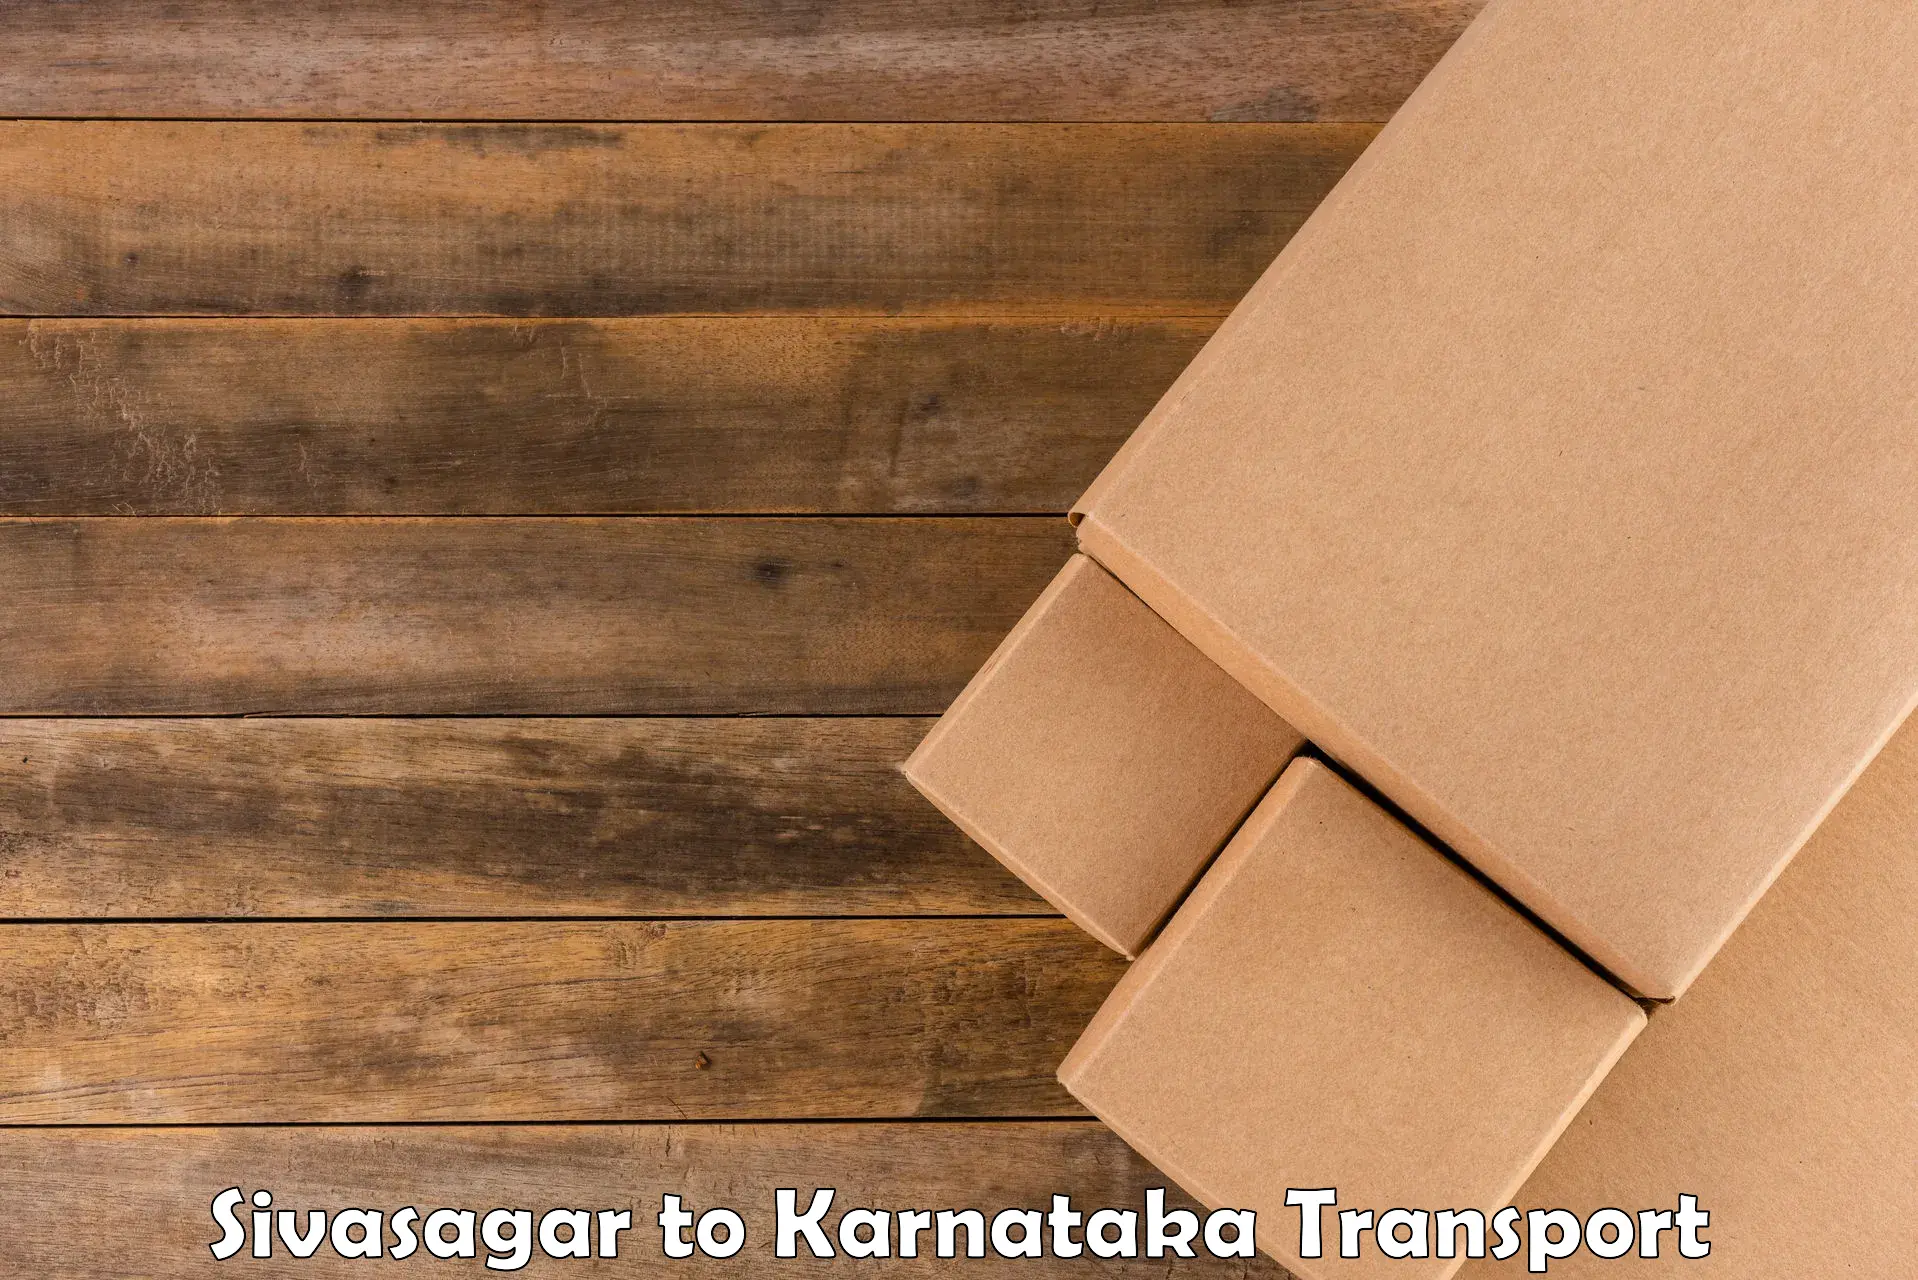 Furniture transport service Sivasagar to Kanjarakatte